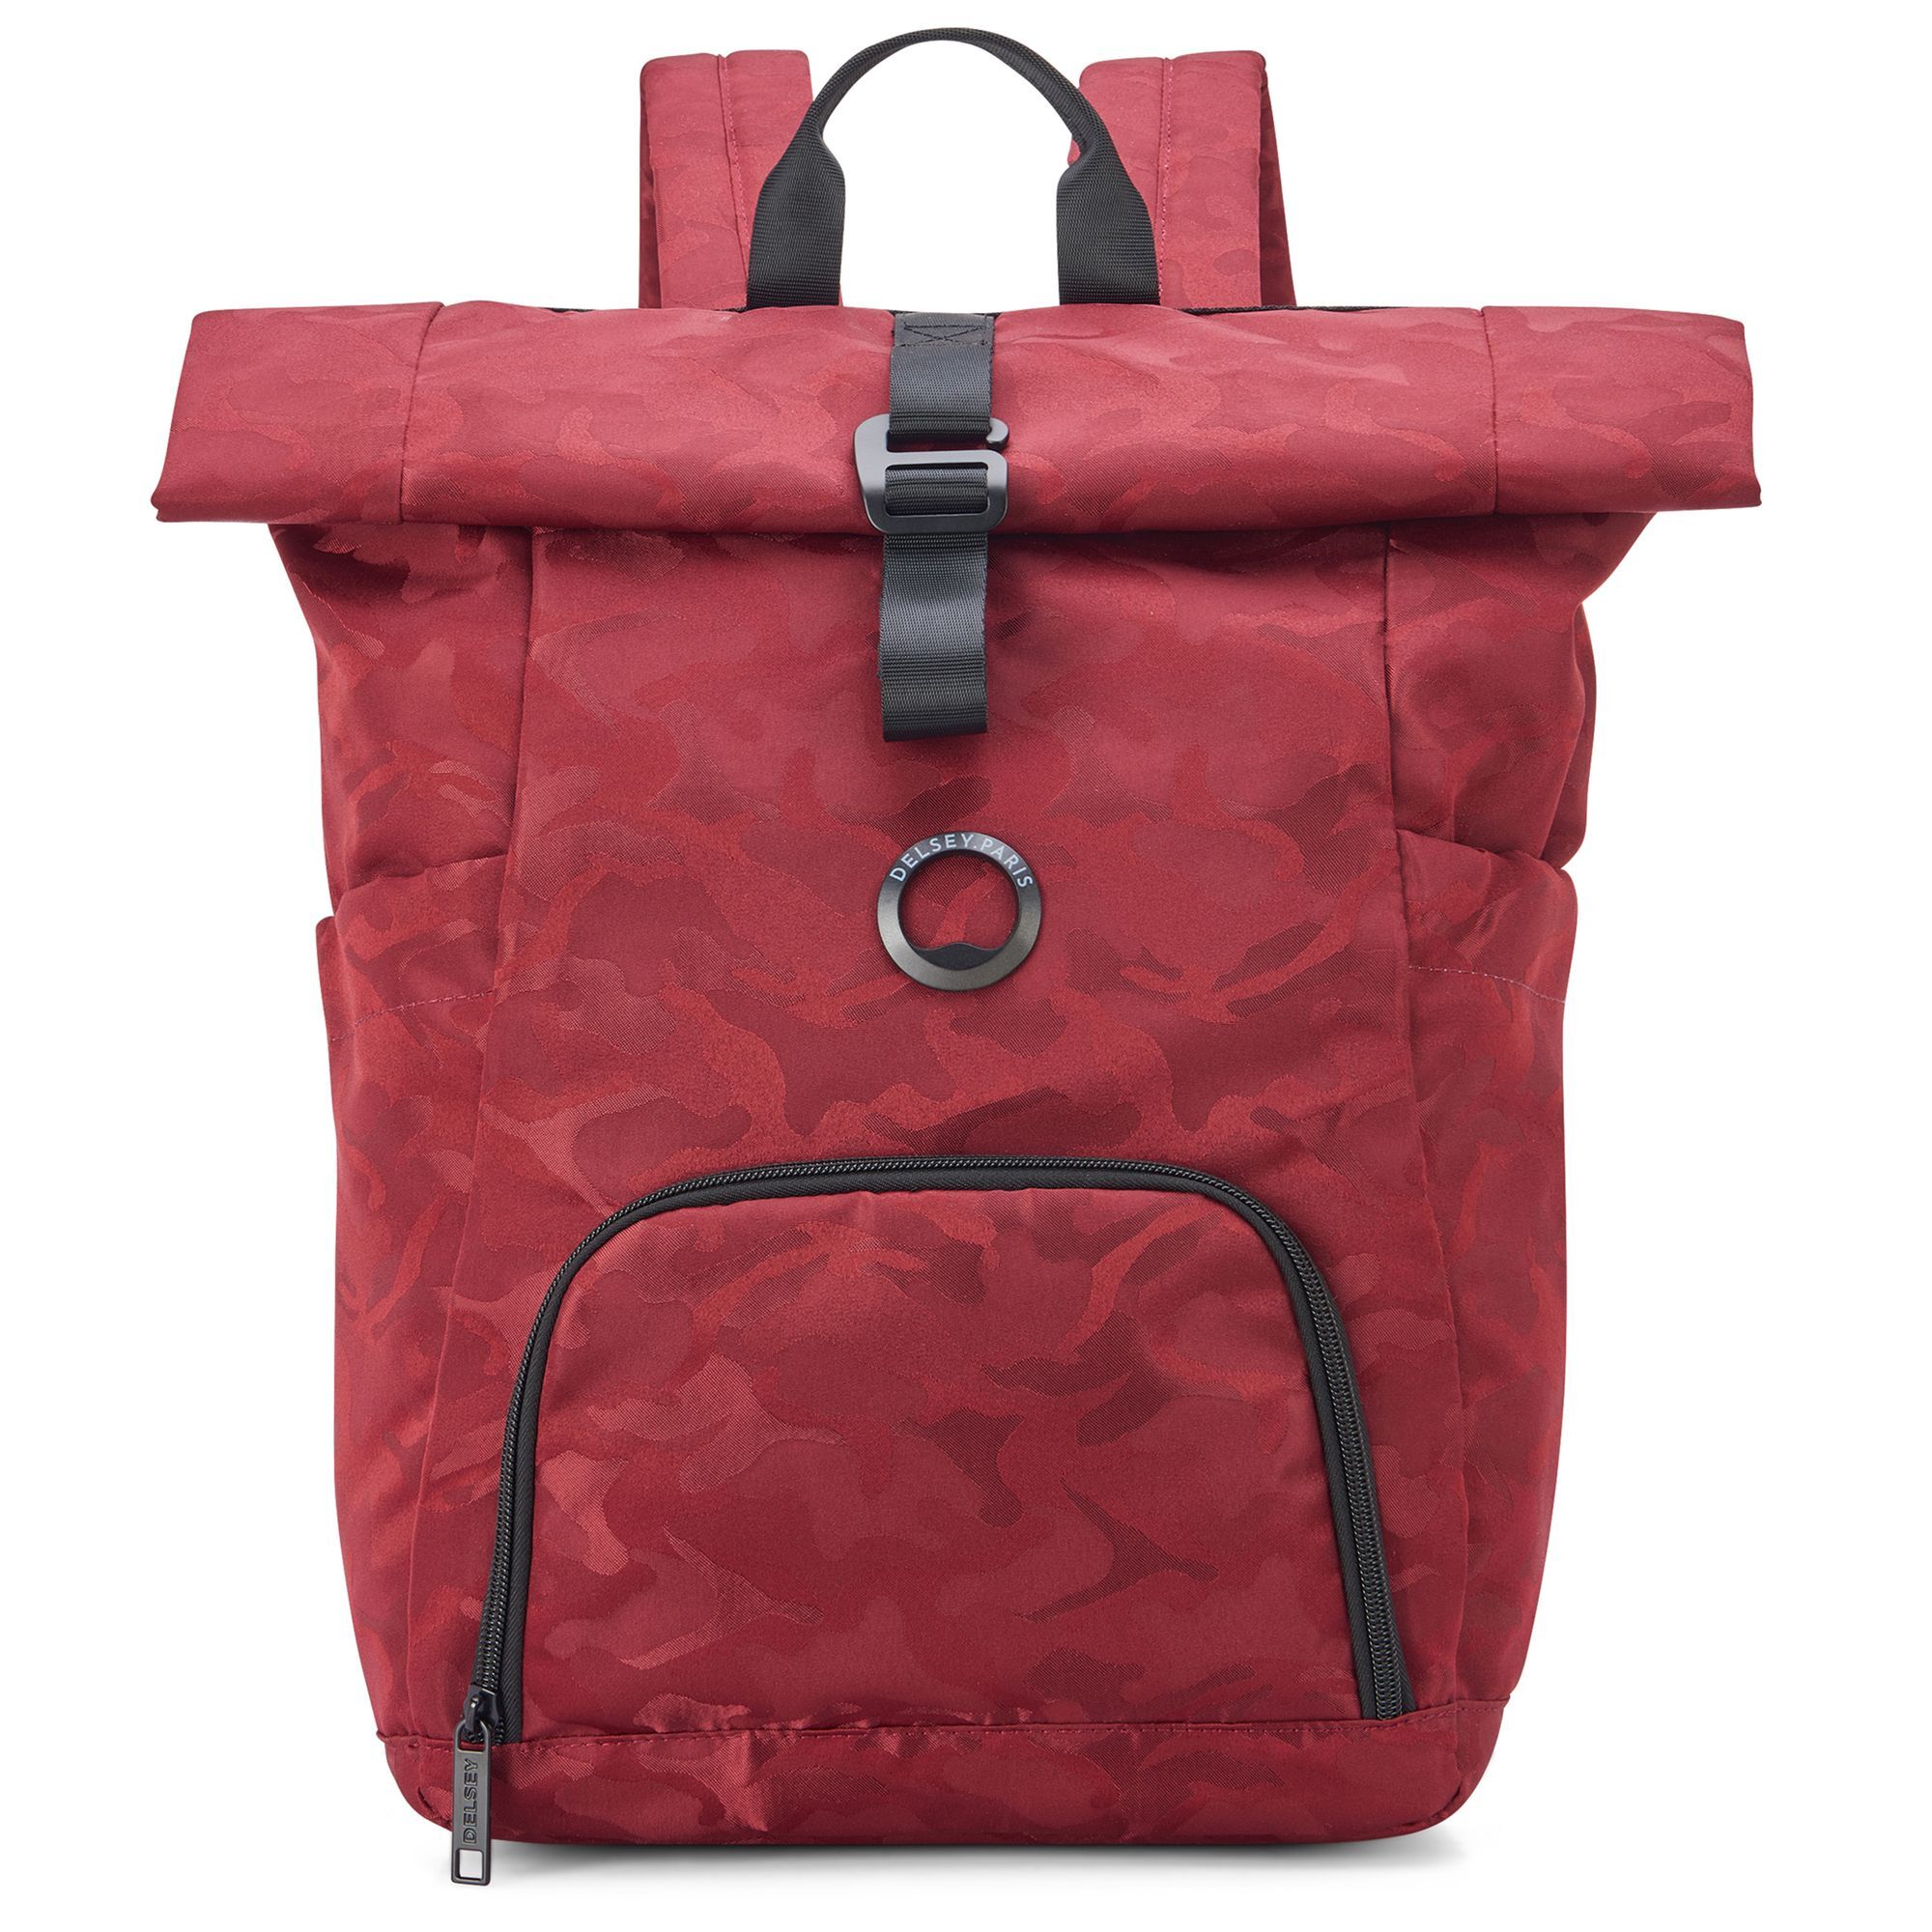 Рюкзак Delsey Citypak 45 cm Laptopfach, цвет rouge camouflage